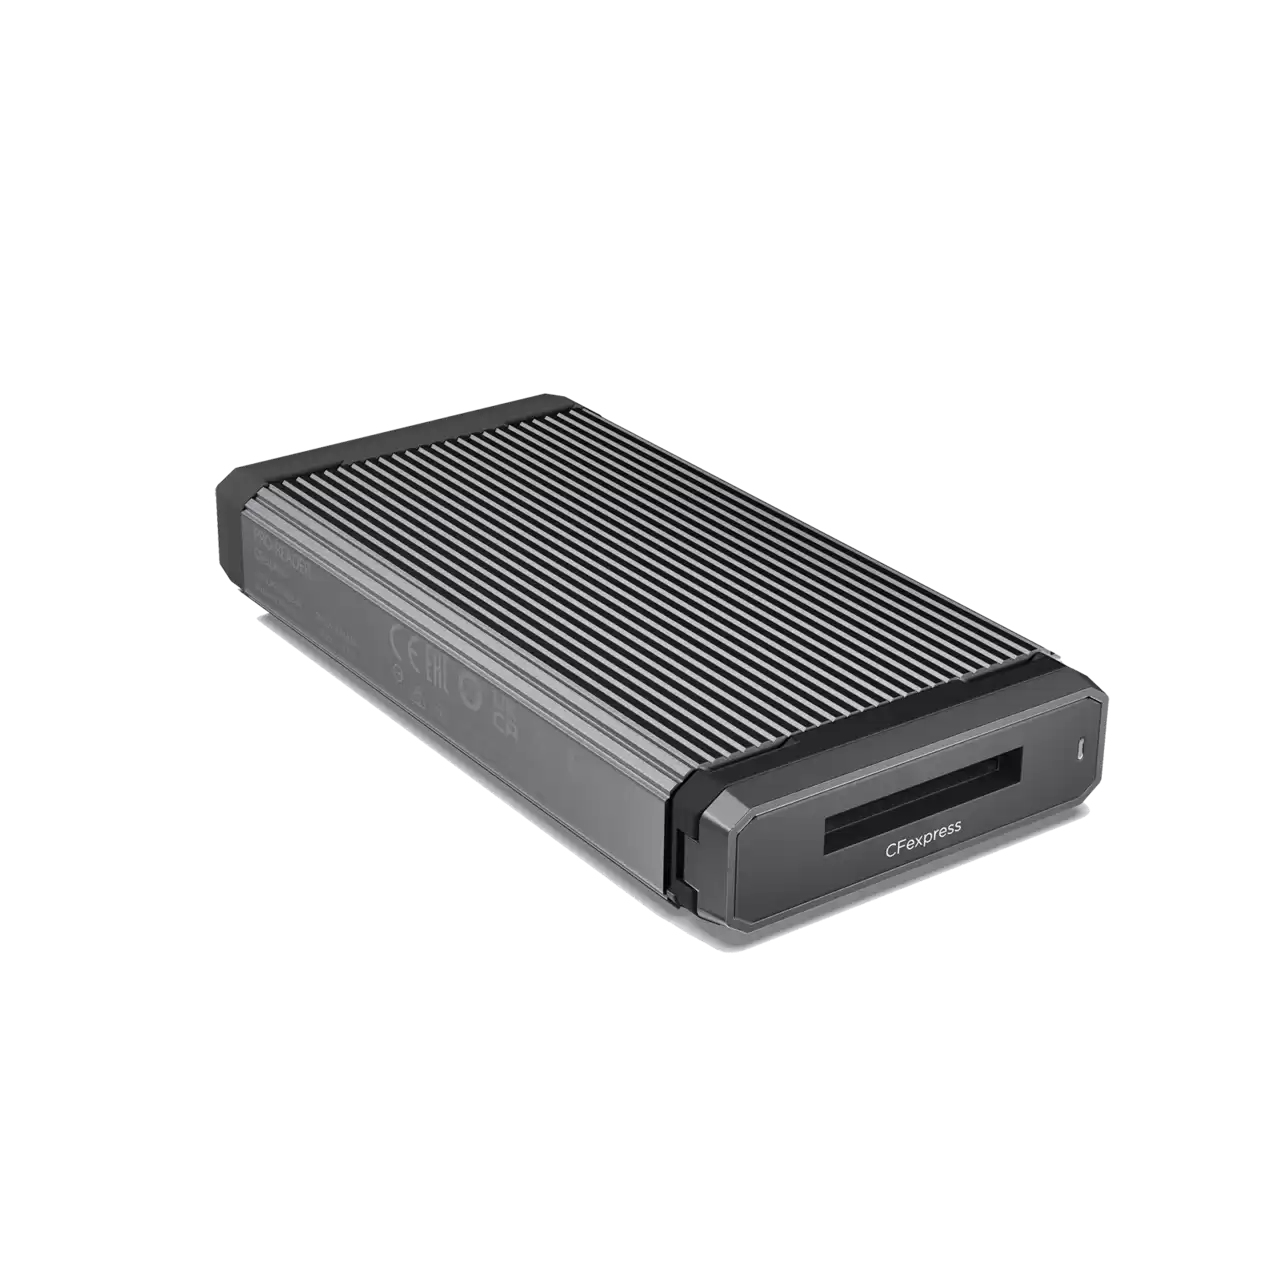  Professional PRO-READER Cfexpress USB 3.2 Gen 2 High-Performance Card Reader